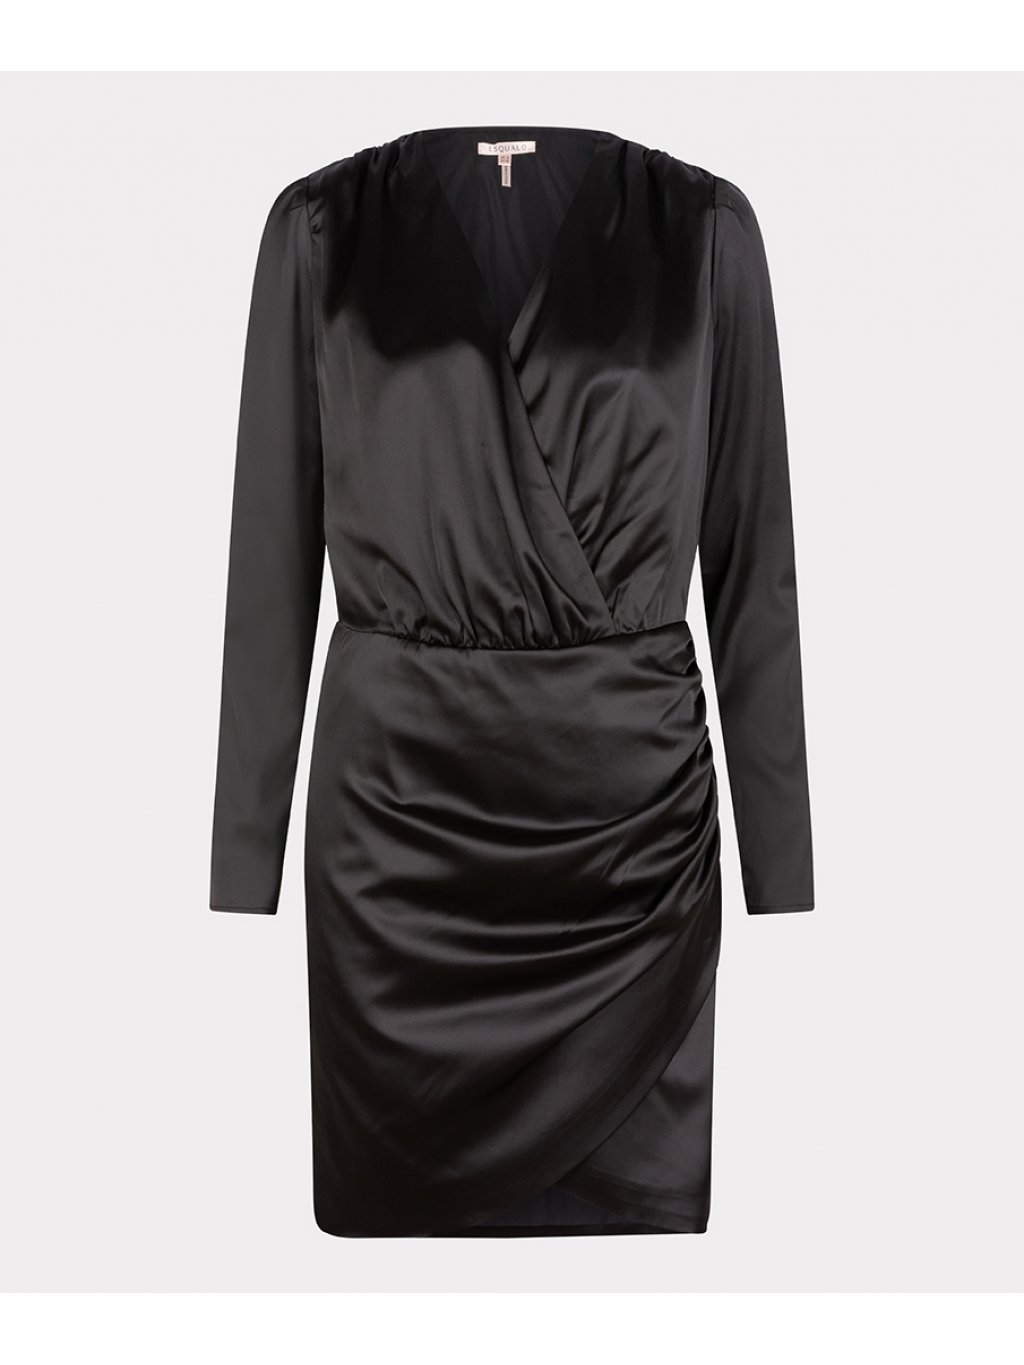 Šaty Esqualo 14722 černé saténové s dlouhým rukávem